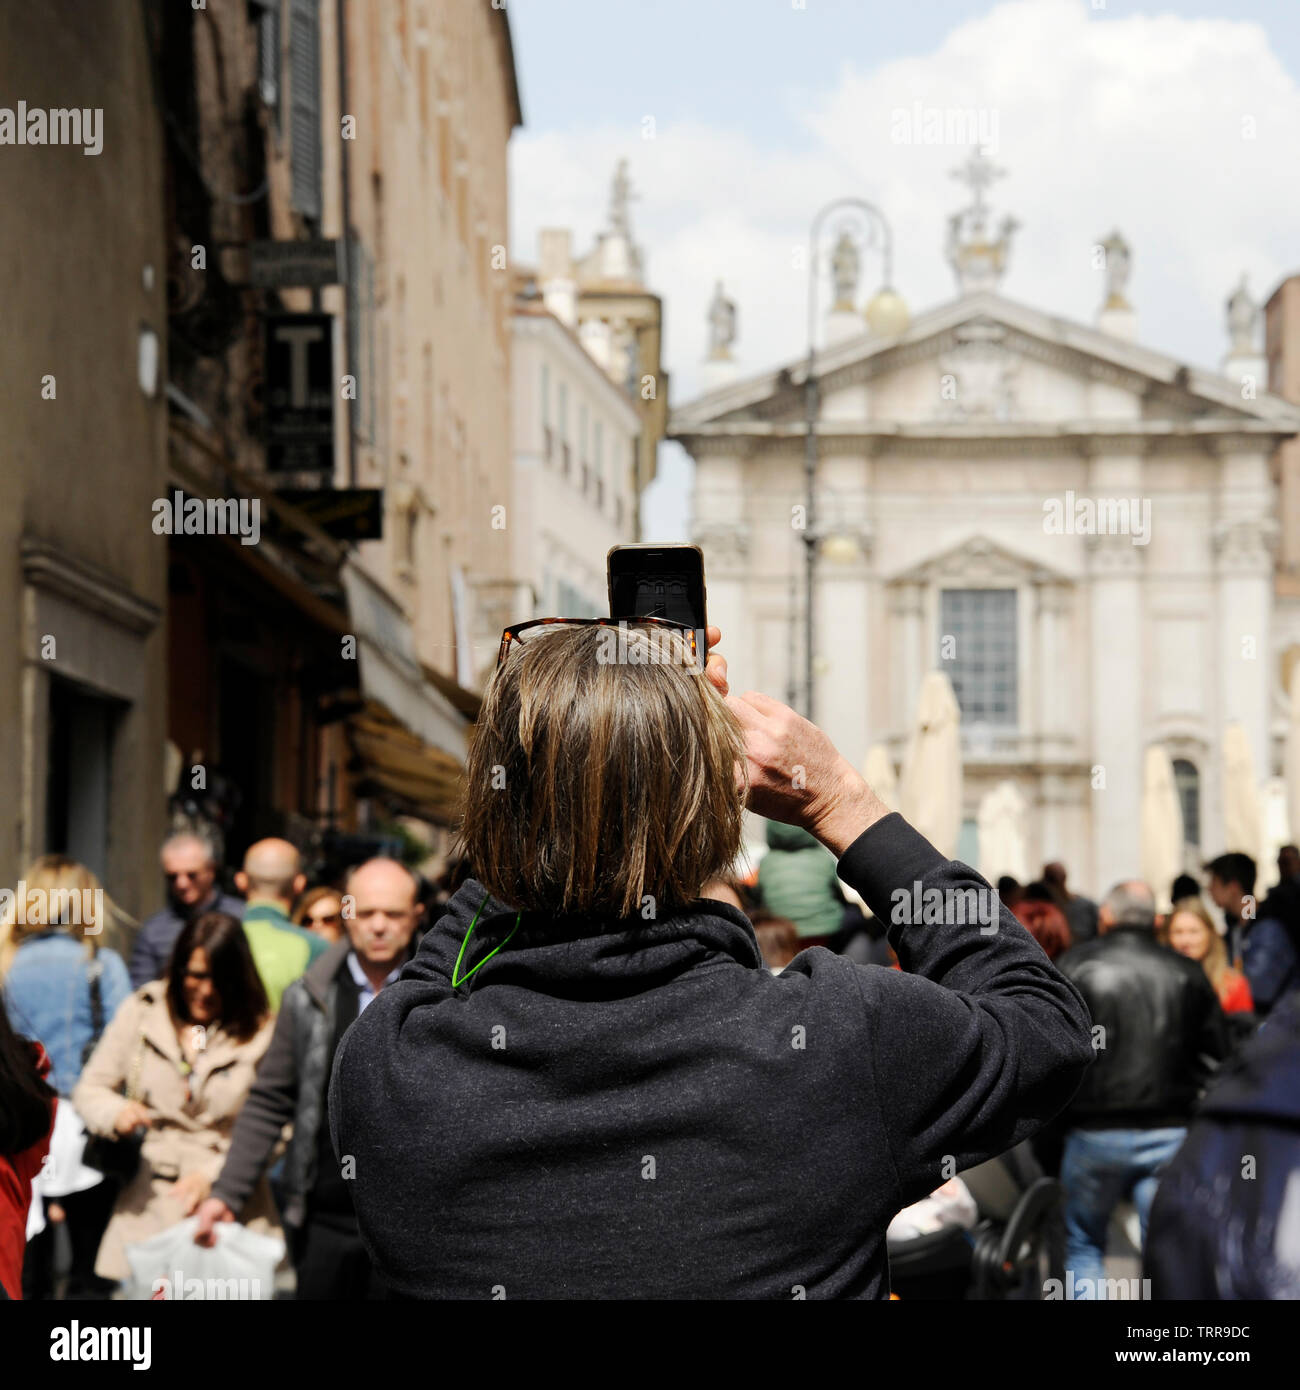 Primo Piano del turista uomo sulla strada a Mantua, prendendo foto di Piazza Sordello con il telefono. Mantova, Italia Foto de stock